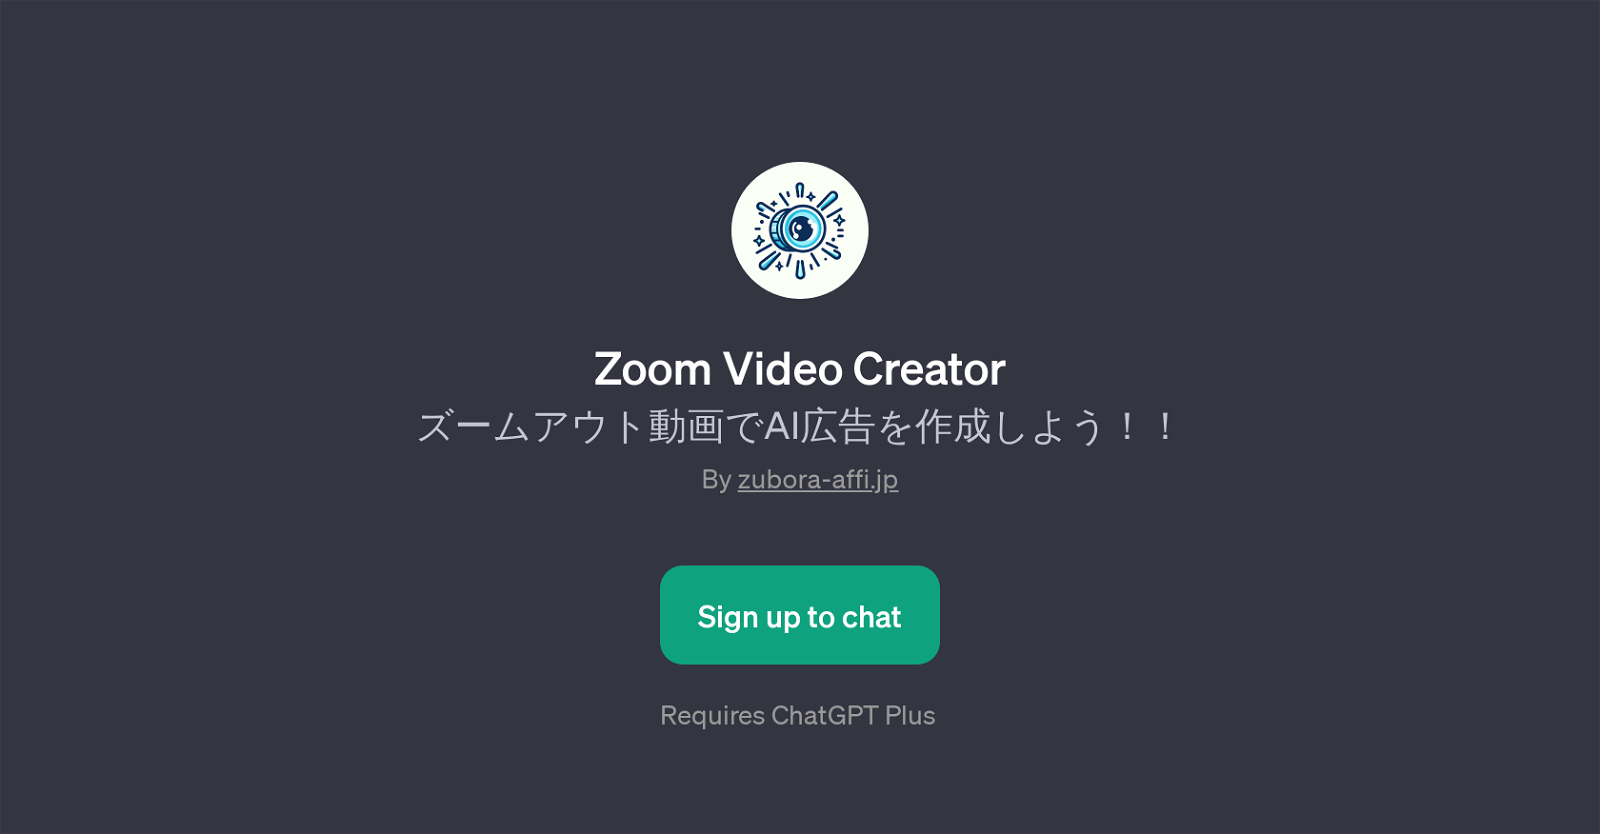 Zoom Video Creator website